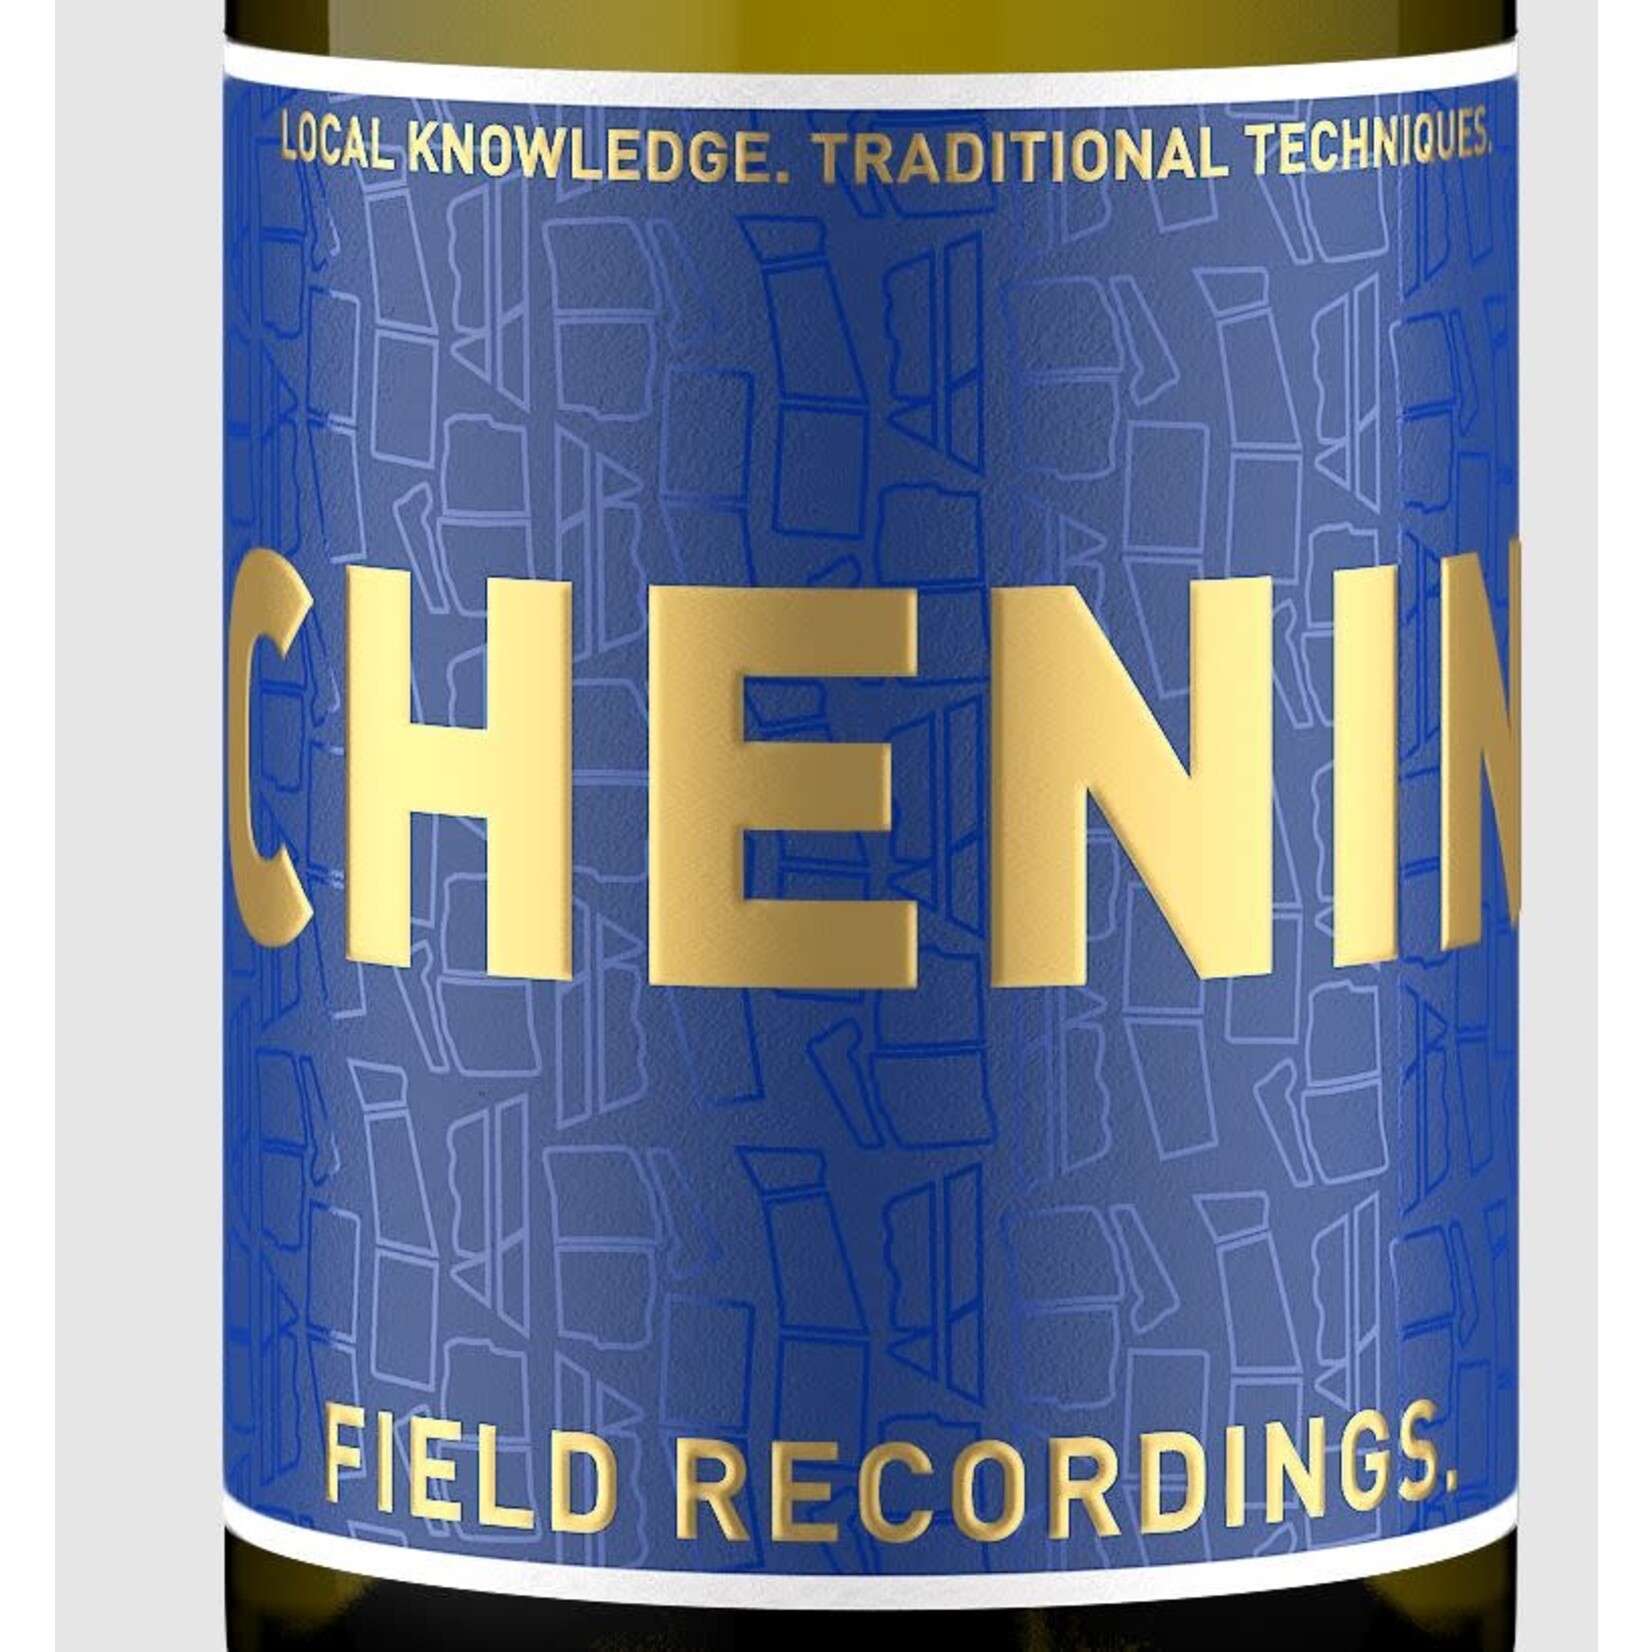 Field Recordings Field Recordings CHENIN (Blue Label) ORGANIC 2022 Central Coast California